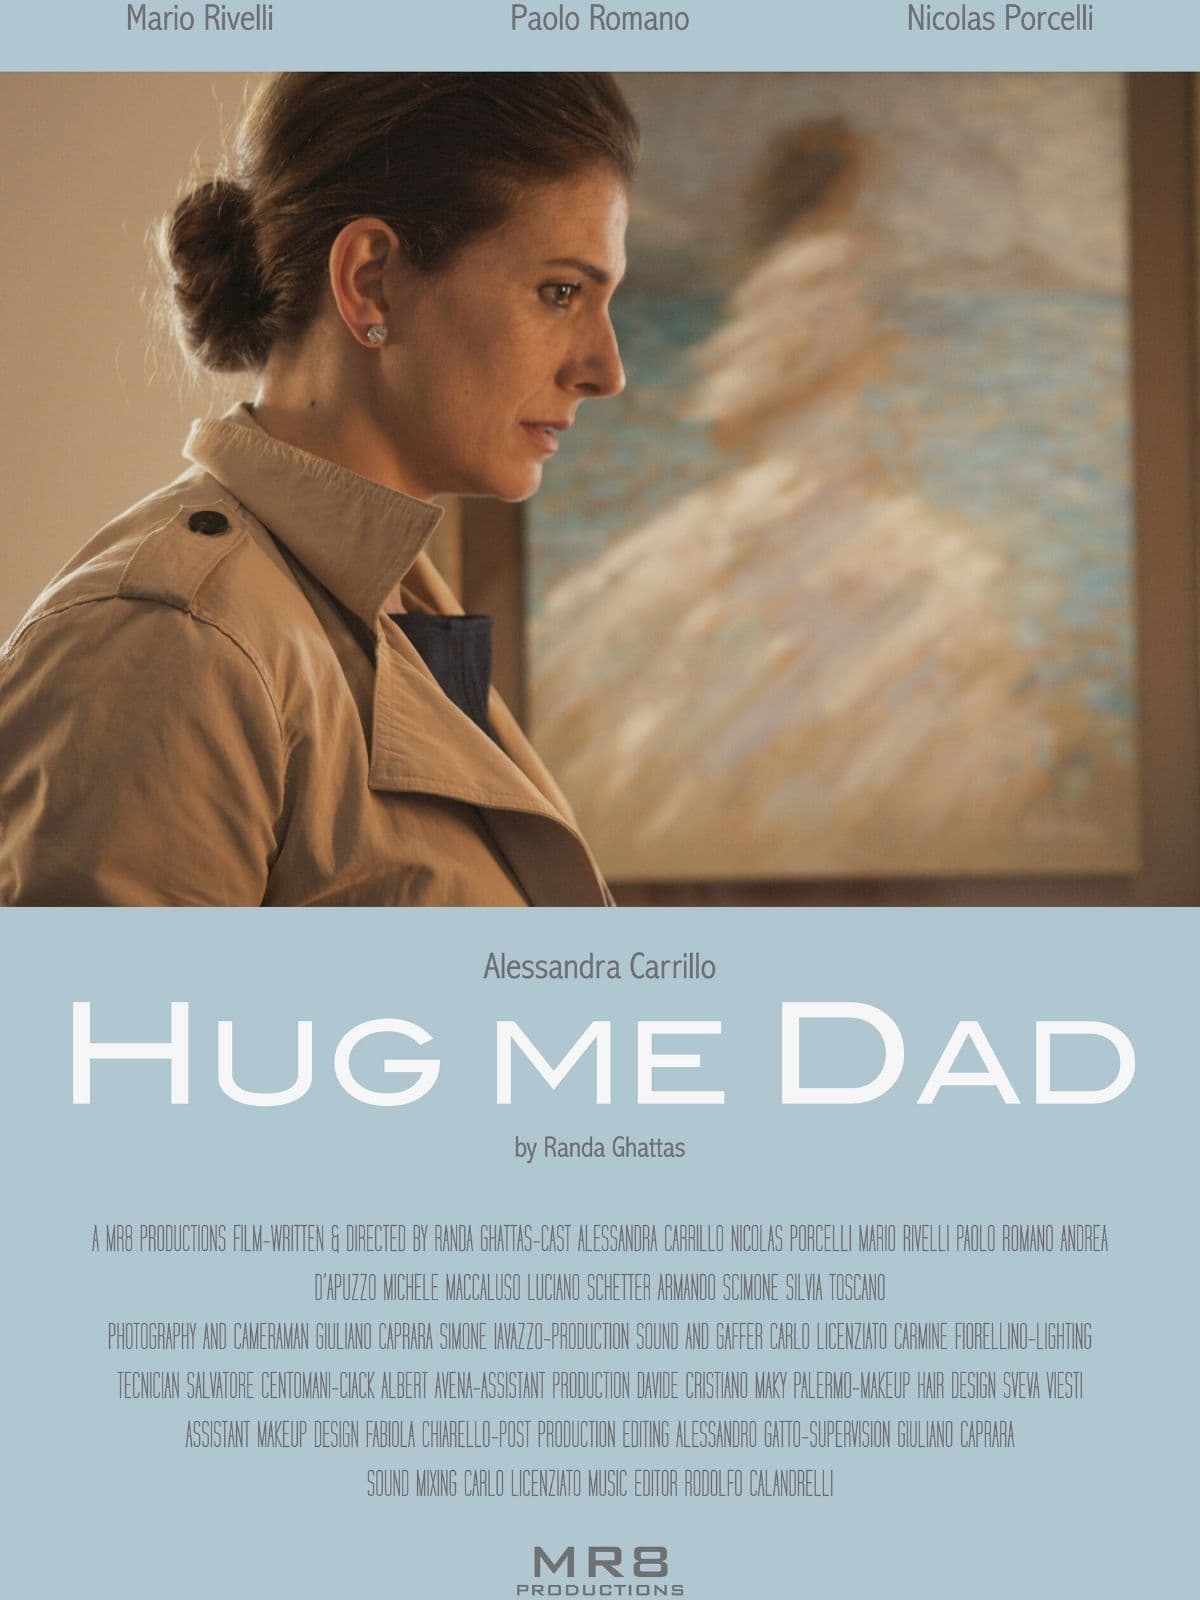 Hug me dad